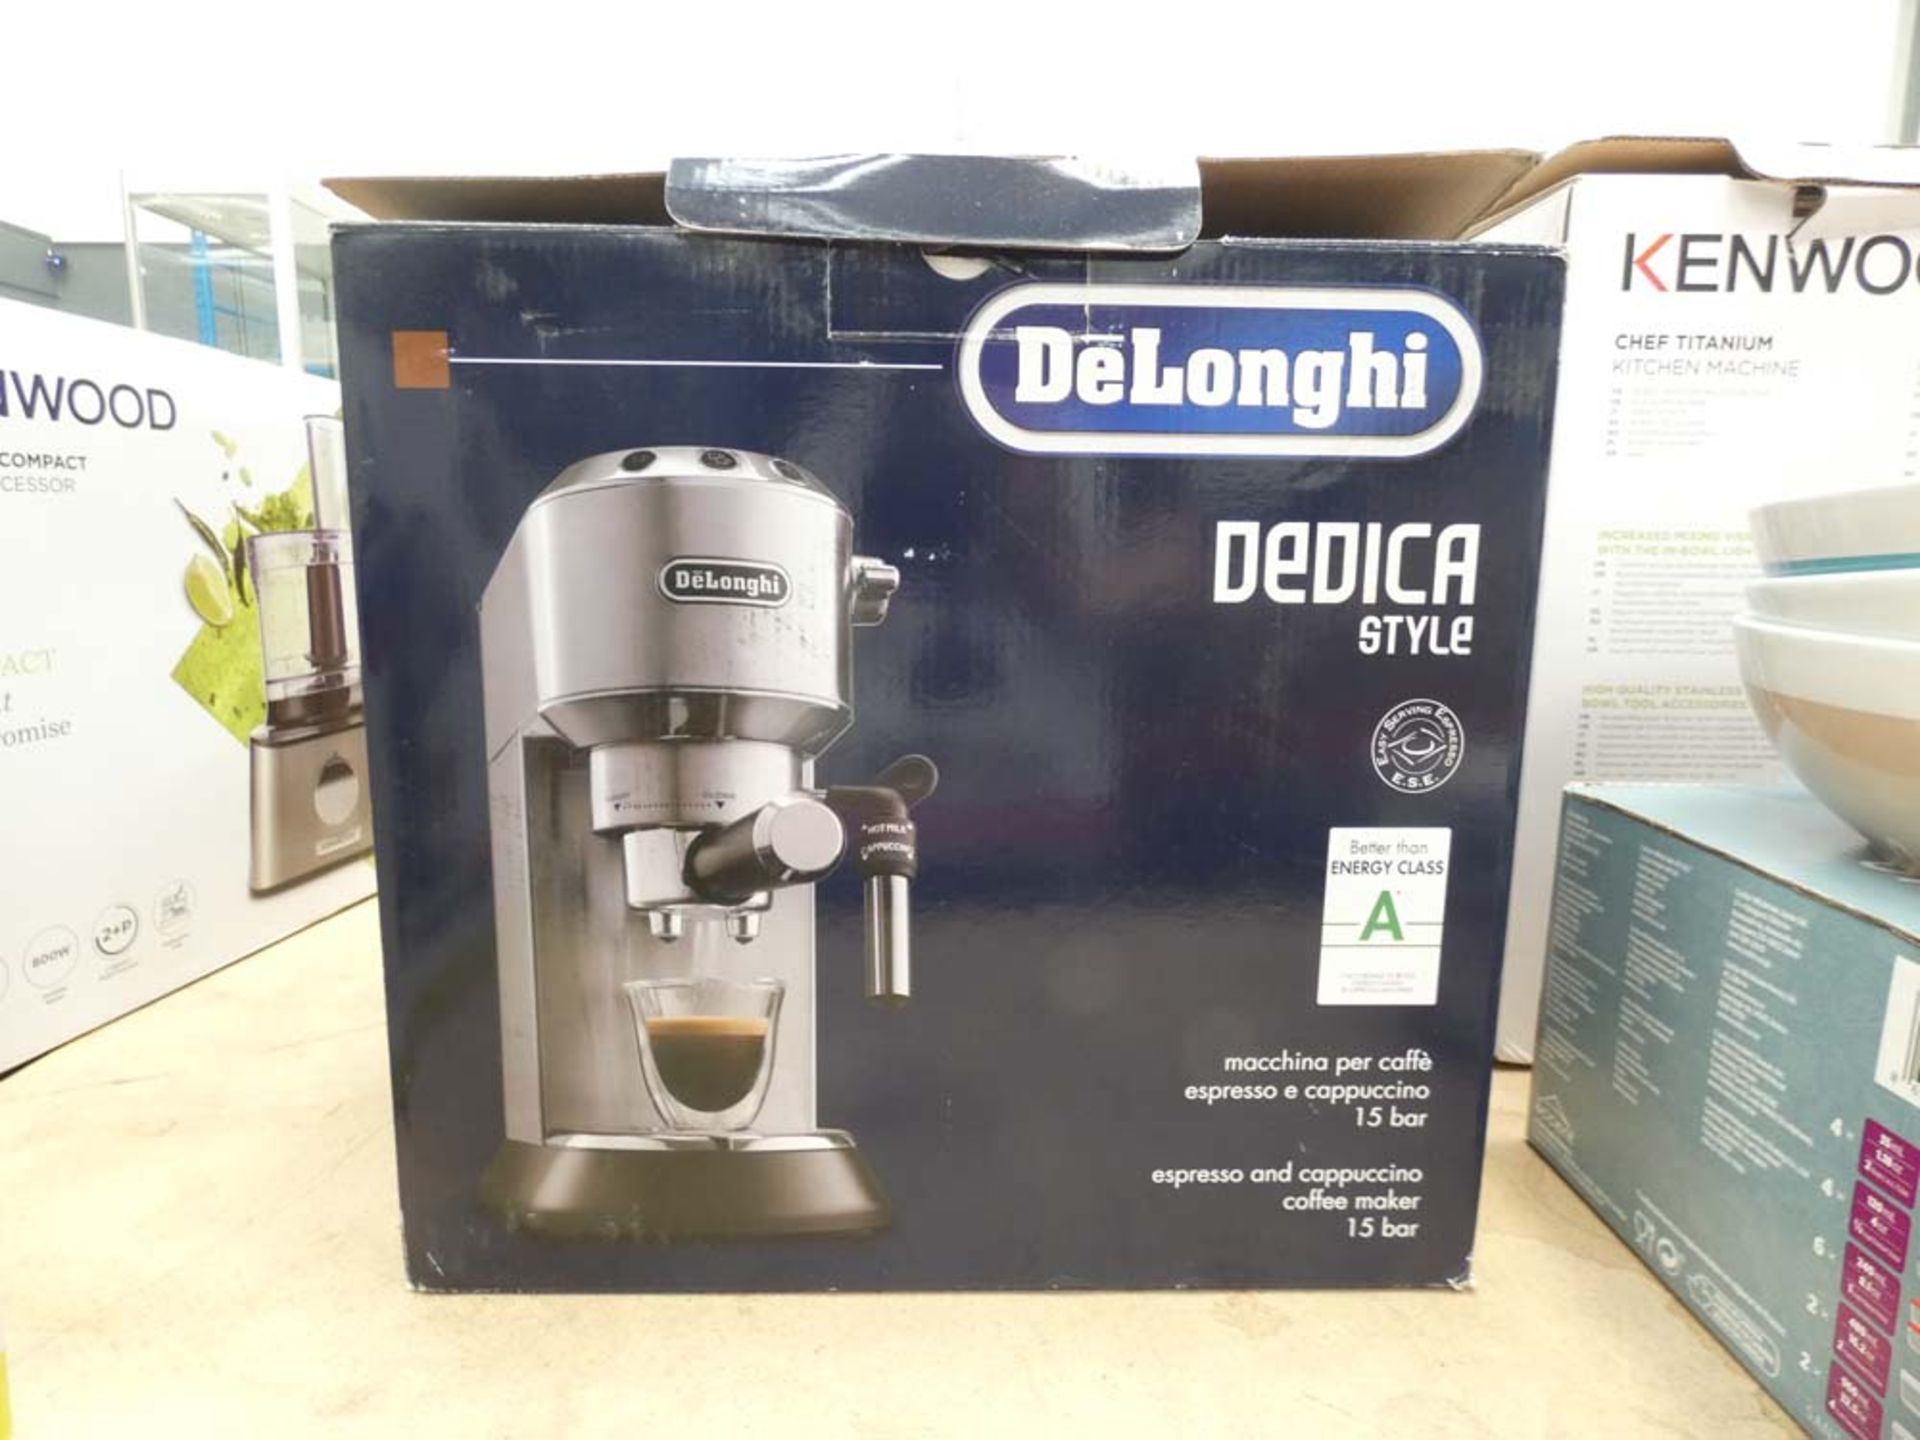 Boxed DeLonghi DEDICA style coffee machine